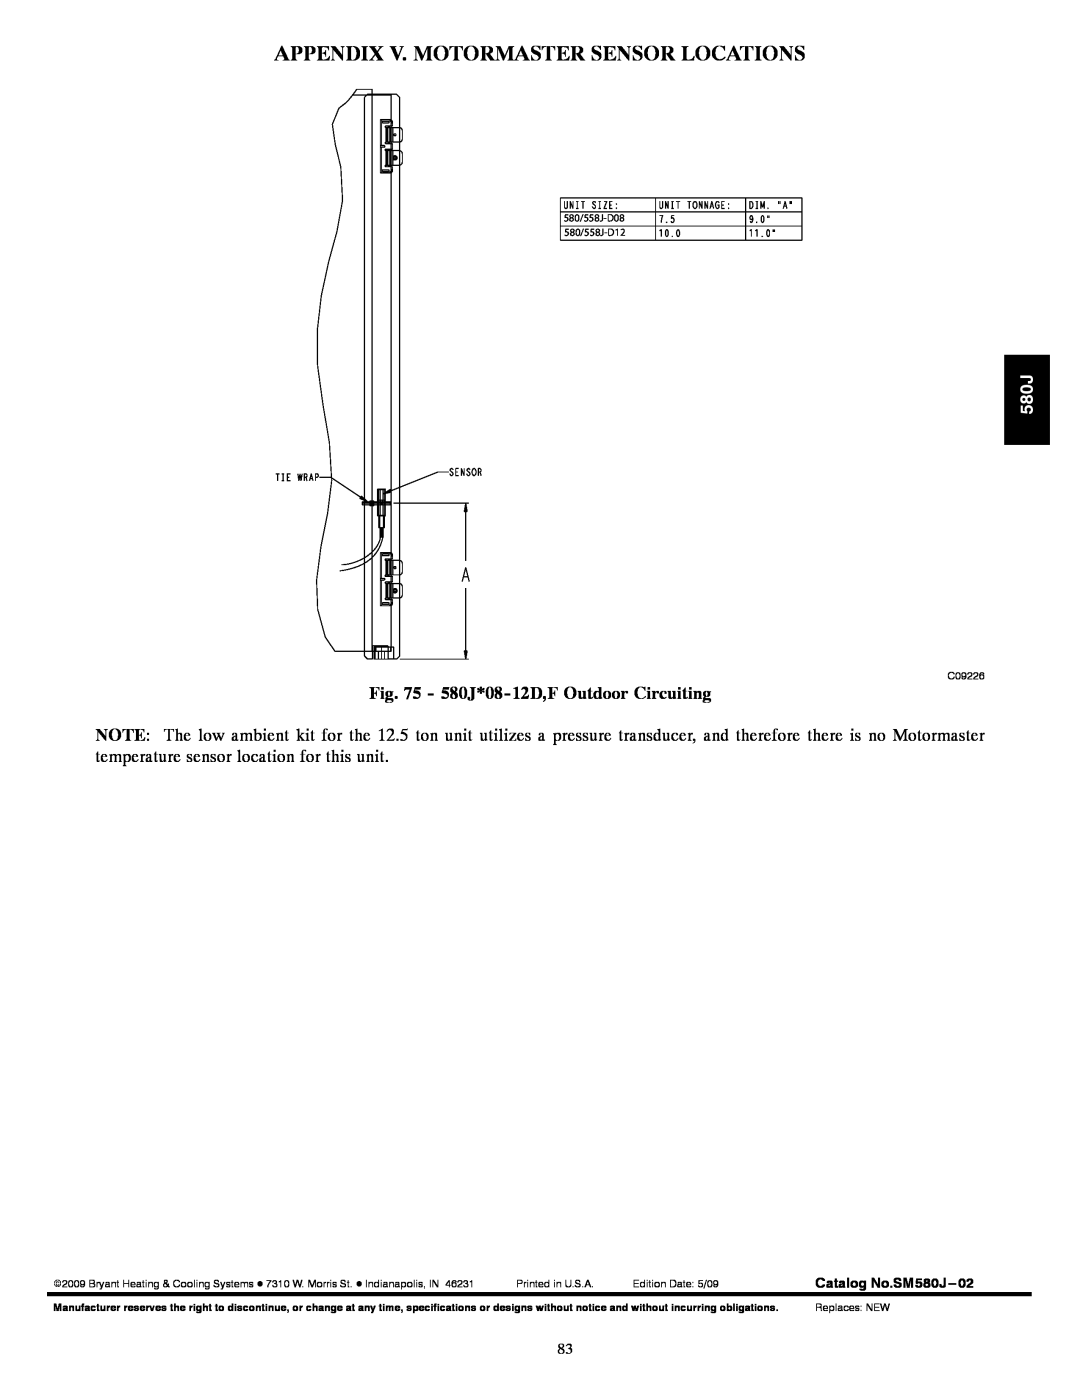 Bryant 580J*08--14D appendix Appendix V. Motormaster Sensor Locations, 580J*08-12D,FOutdoor Circuiting 